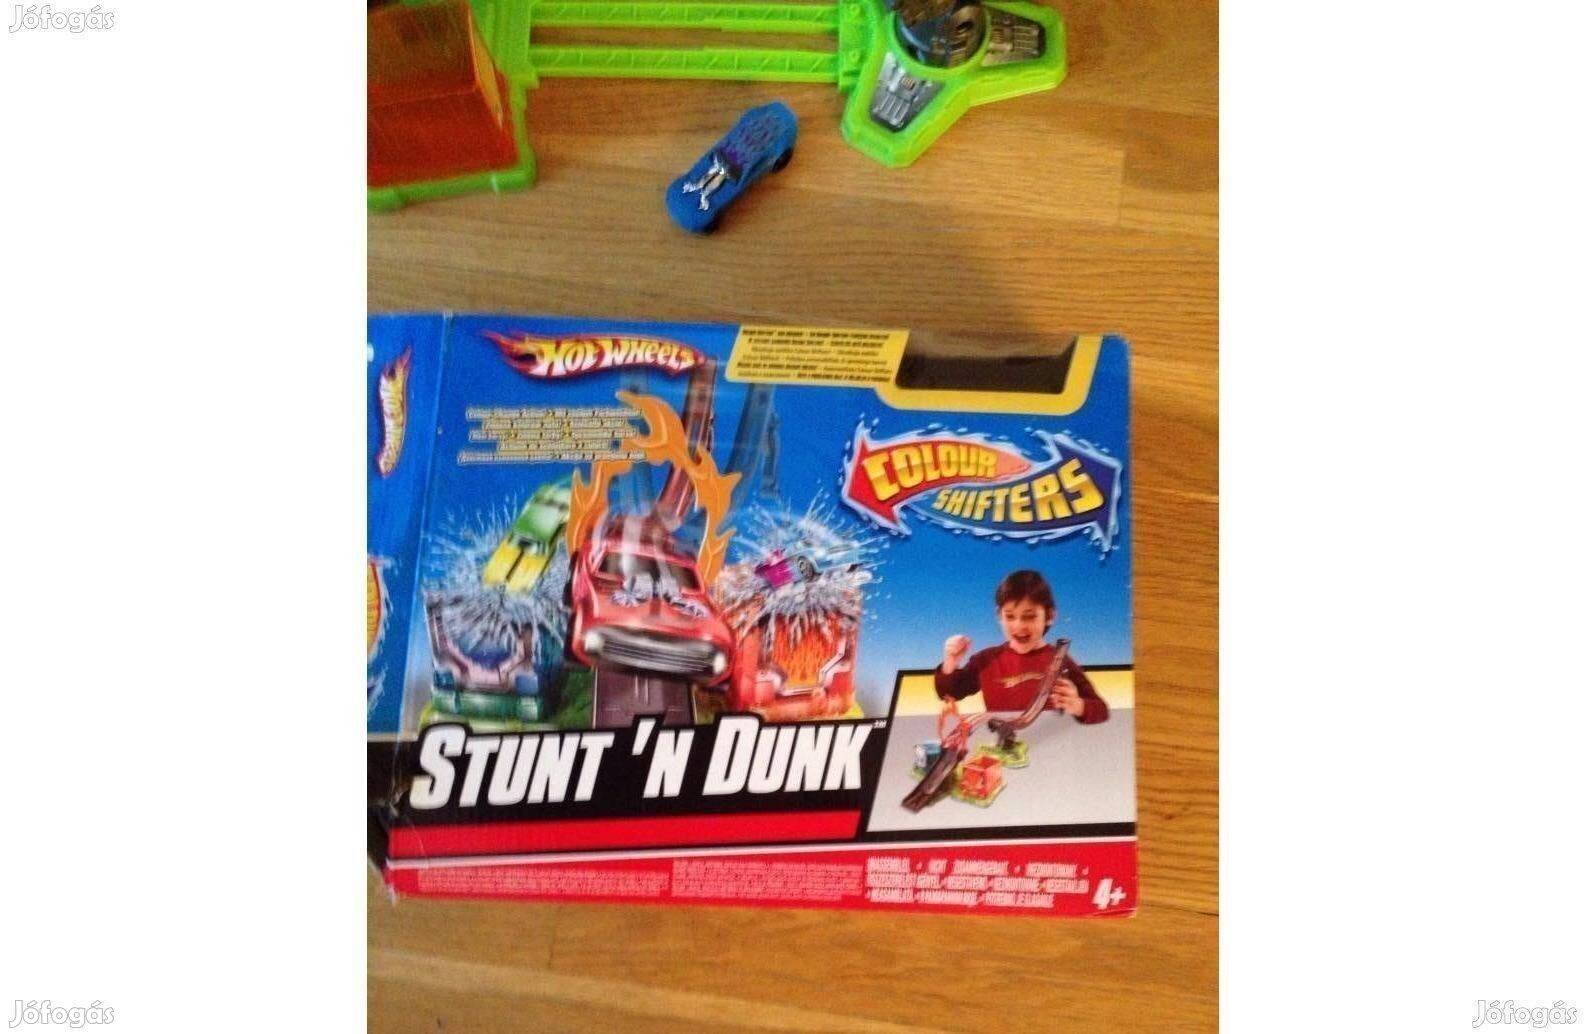 Hot wheels pálya autó játék Stunk'n Dunk